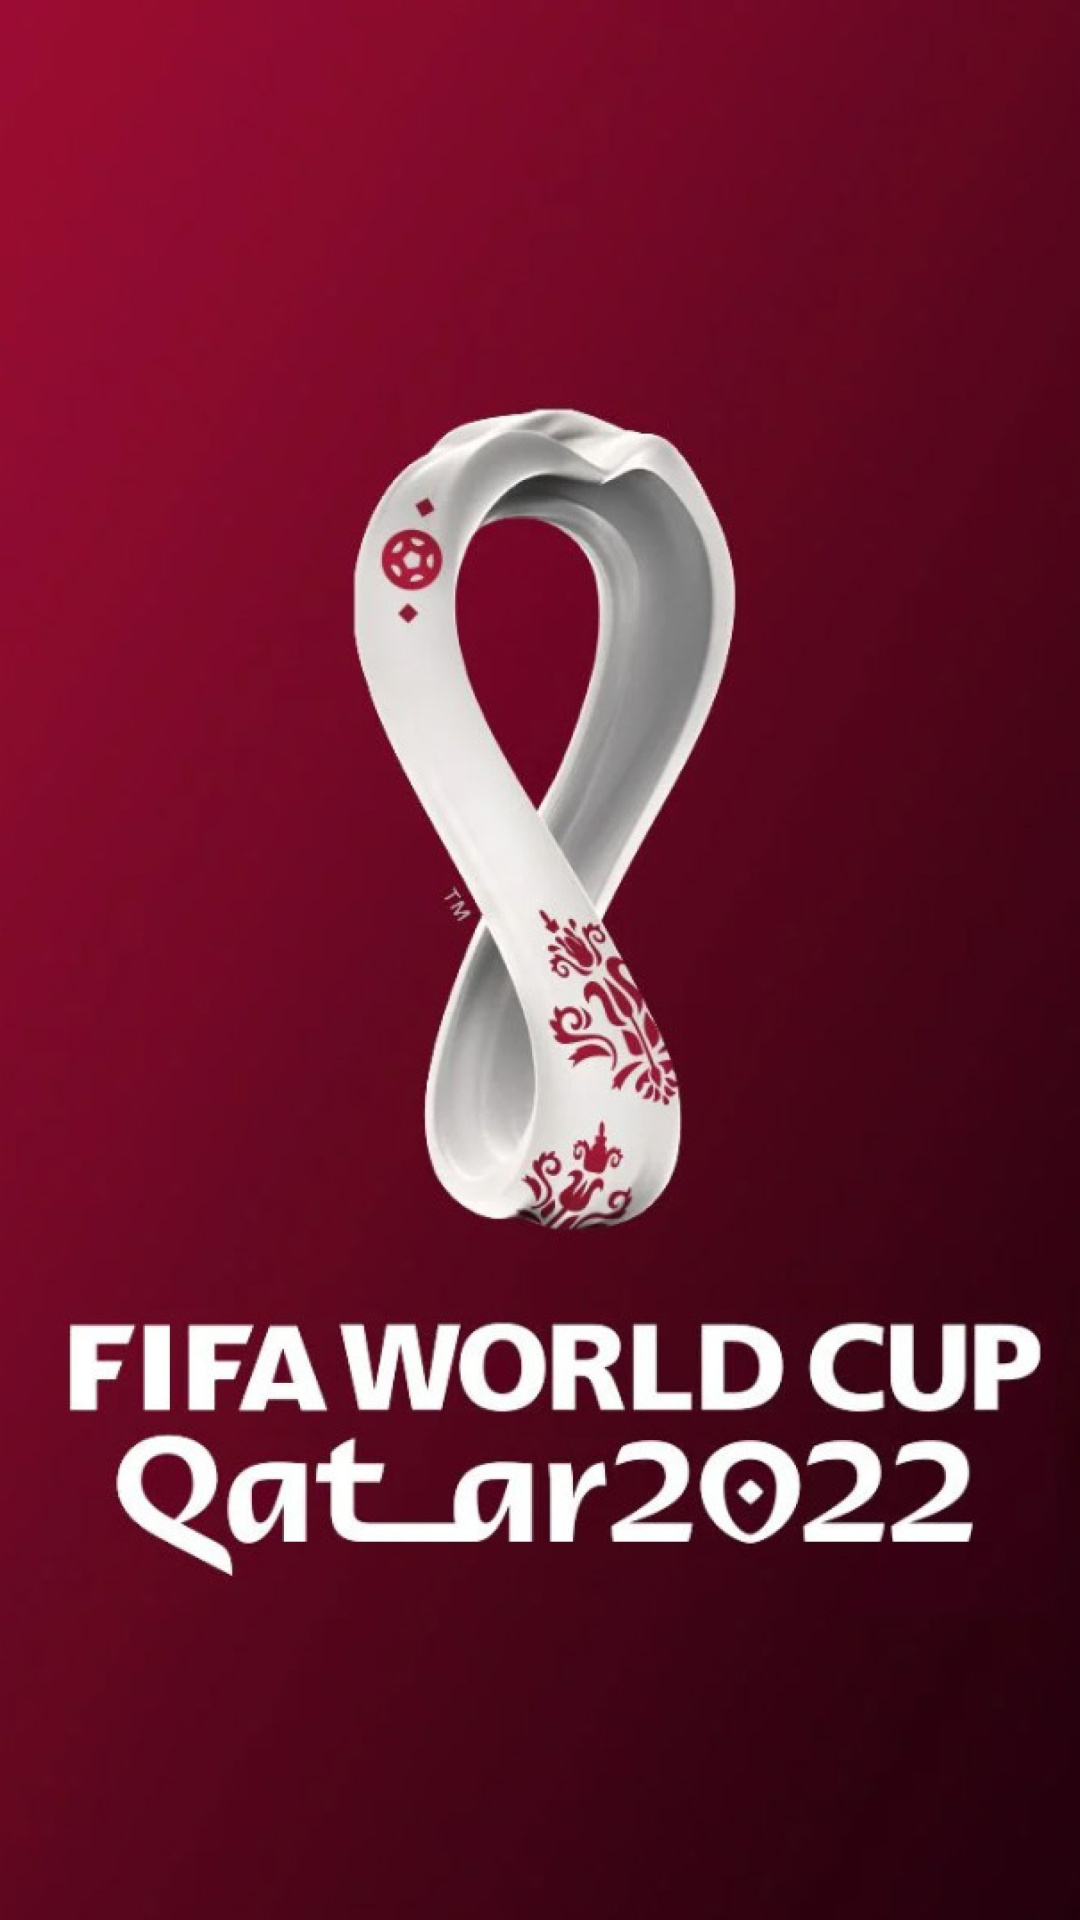 Das World Cup Qatar 2022 Wallpaper 1080x1920